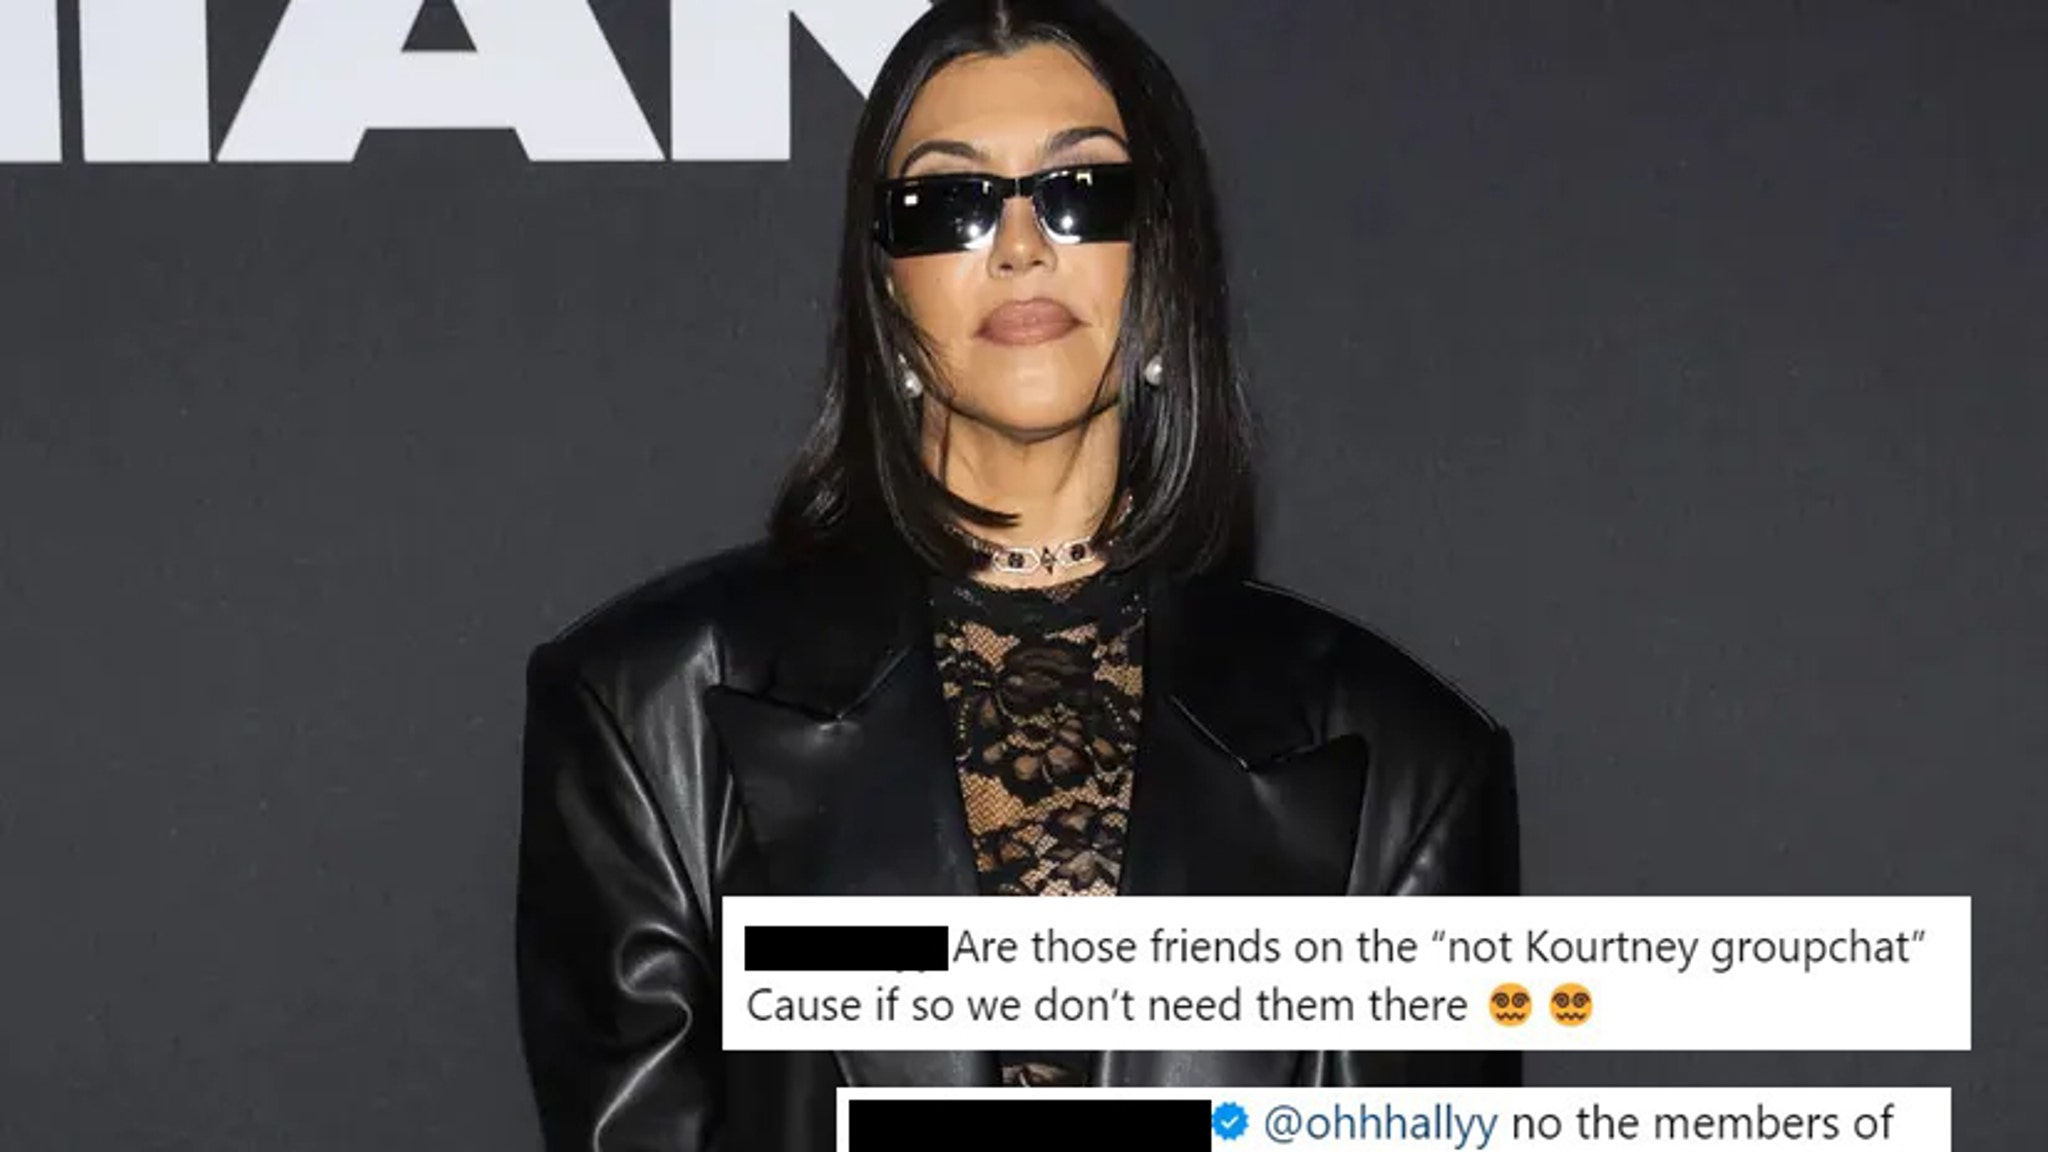 考特尼·卡戴珊 (Kourtney Kardashian) 透露谁是“不是考特尼”群聊的成员